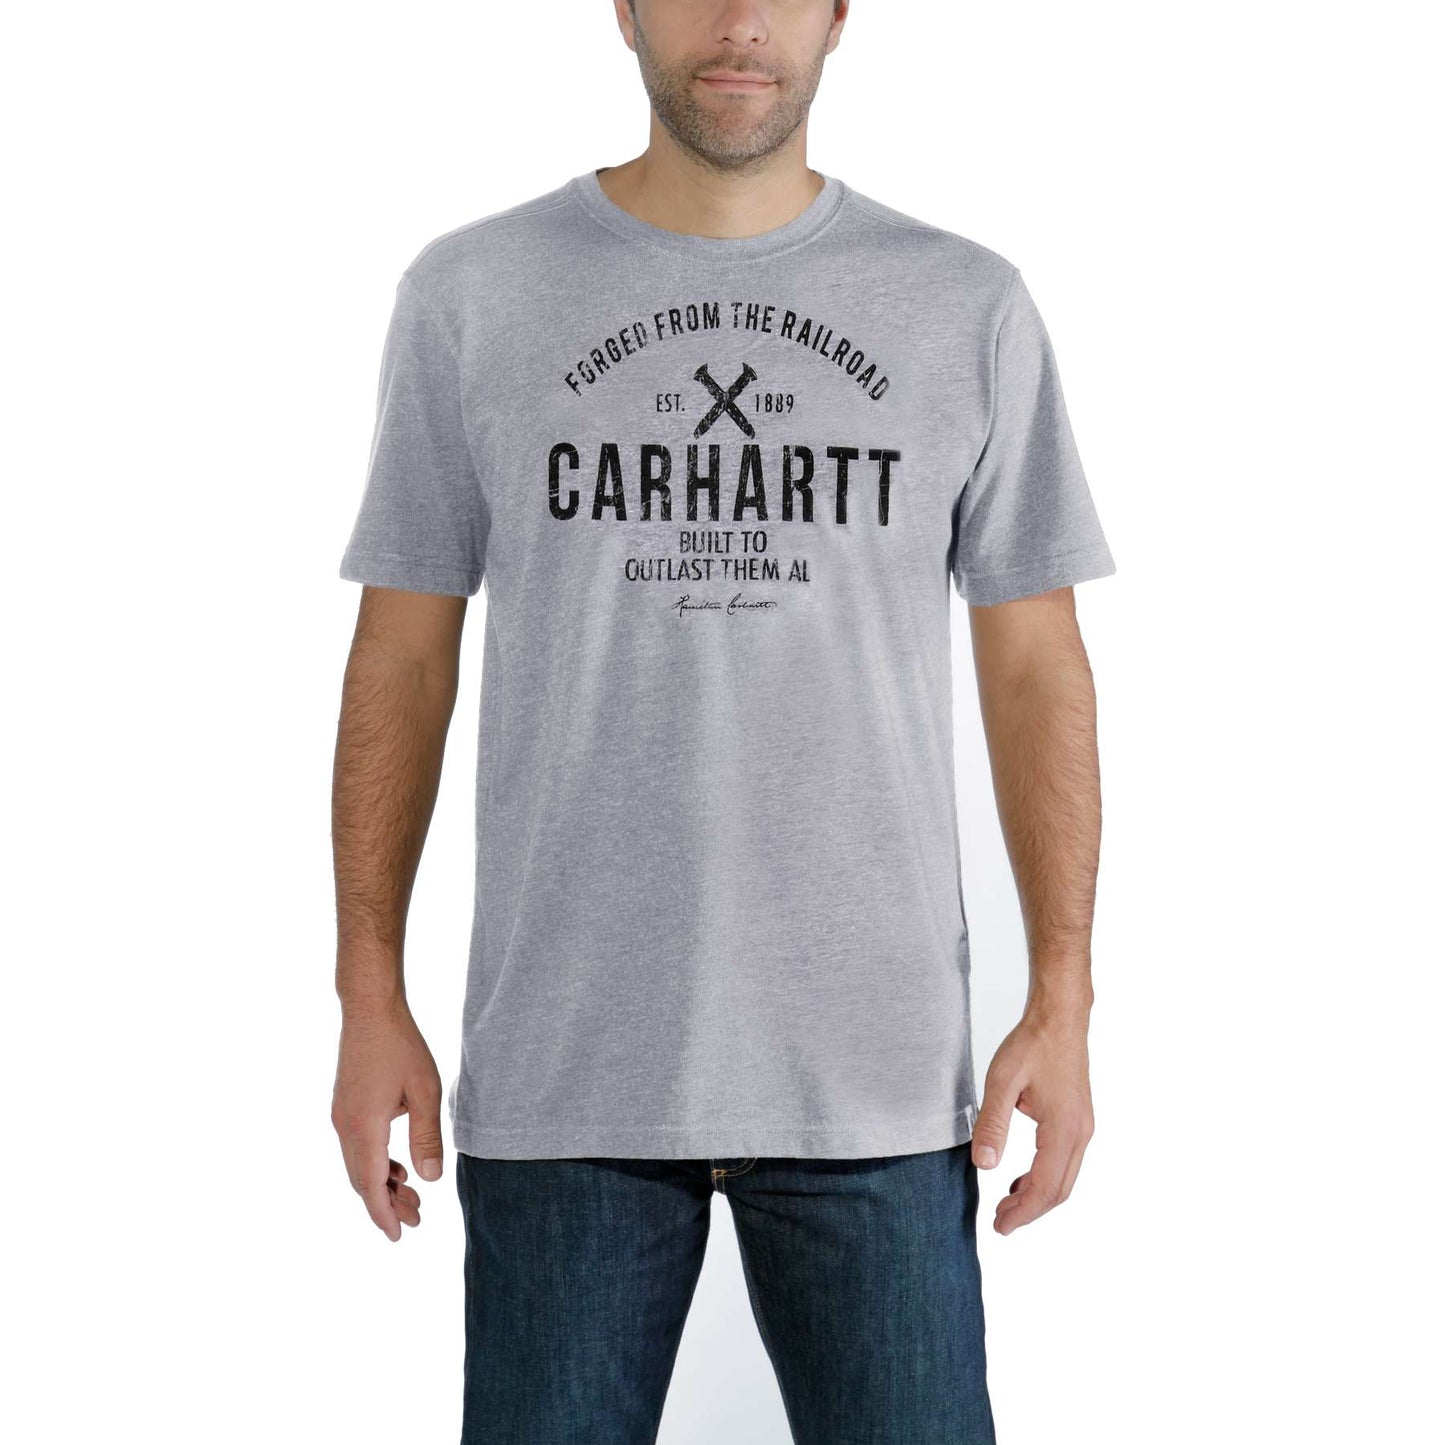 Carhartt Outlast Graphic T-Shirt